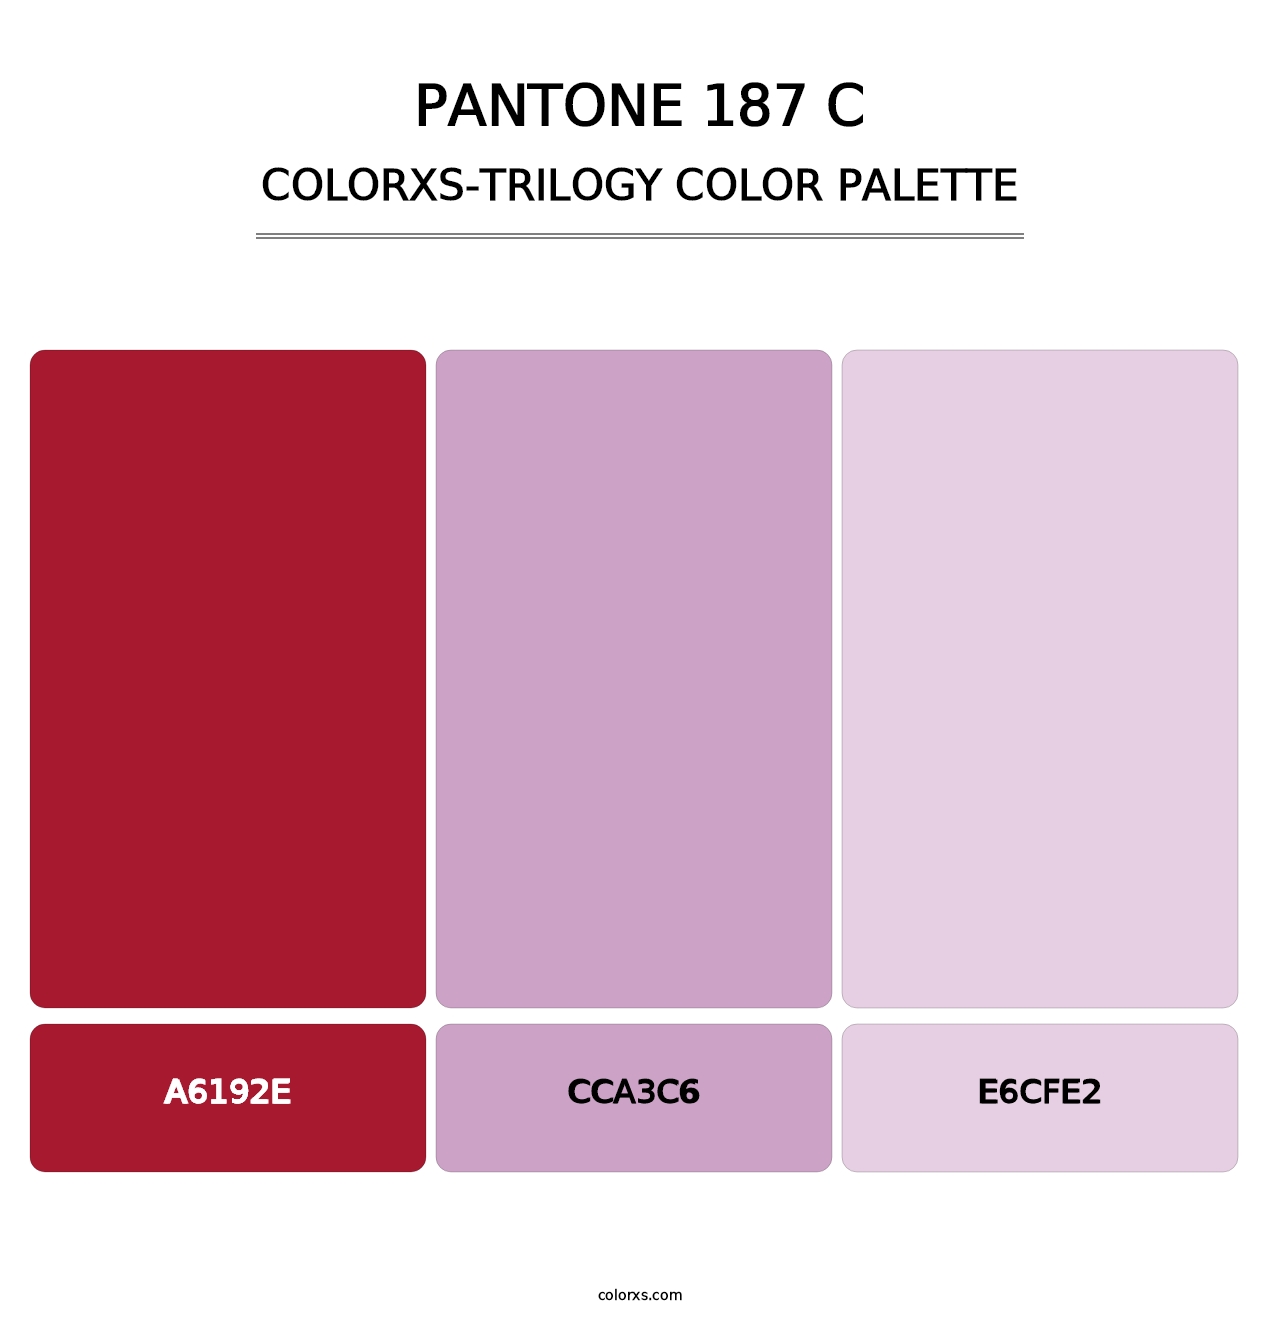 PANTONE 187 C - Colorxs Trilogy Palette